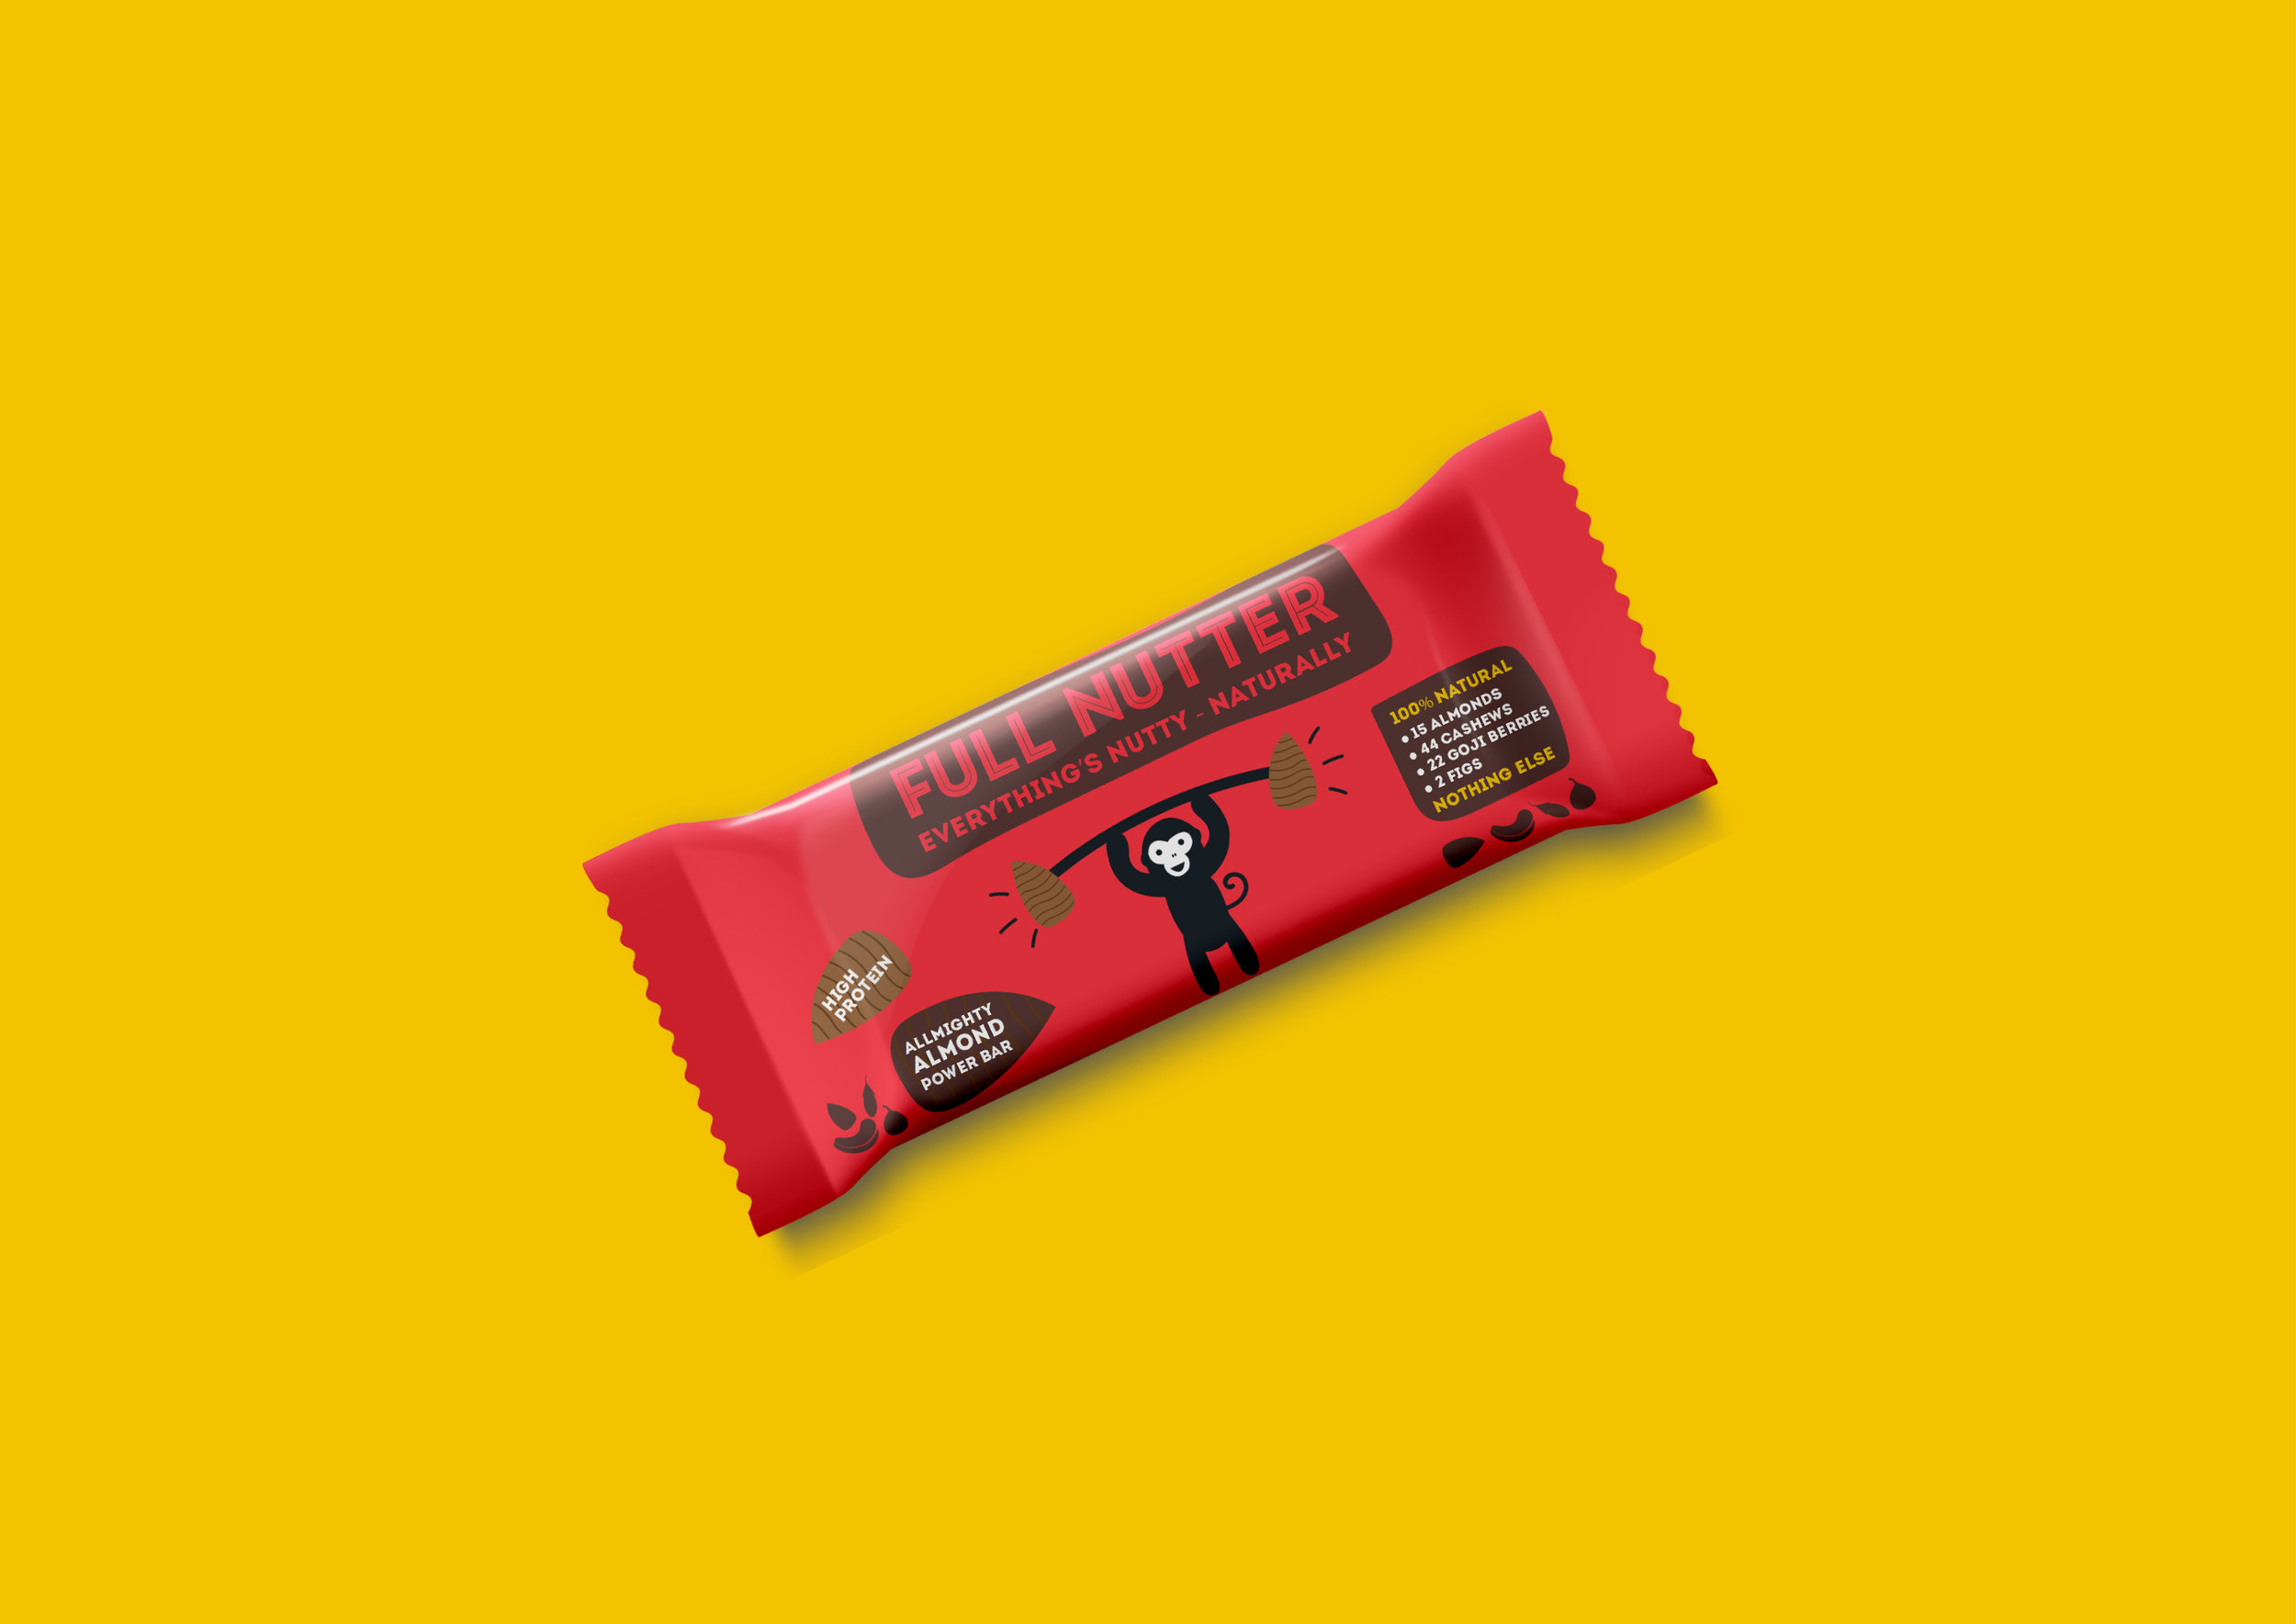 Packaging Designer UK Packaging design of a red Full Nutter energy bar